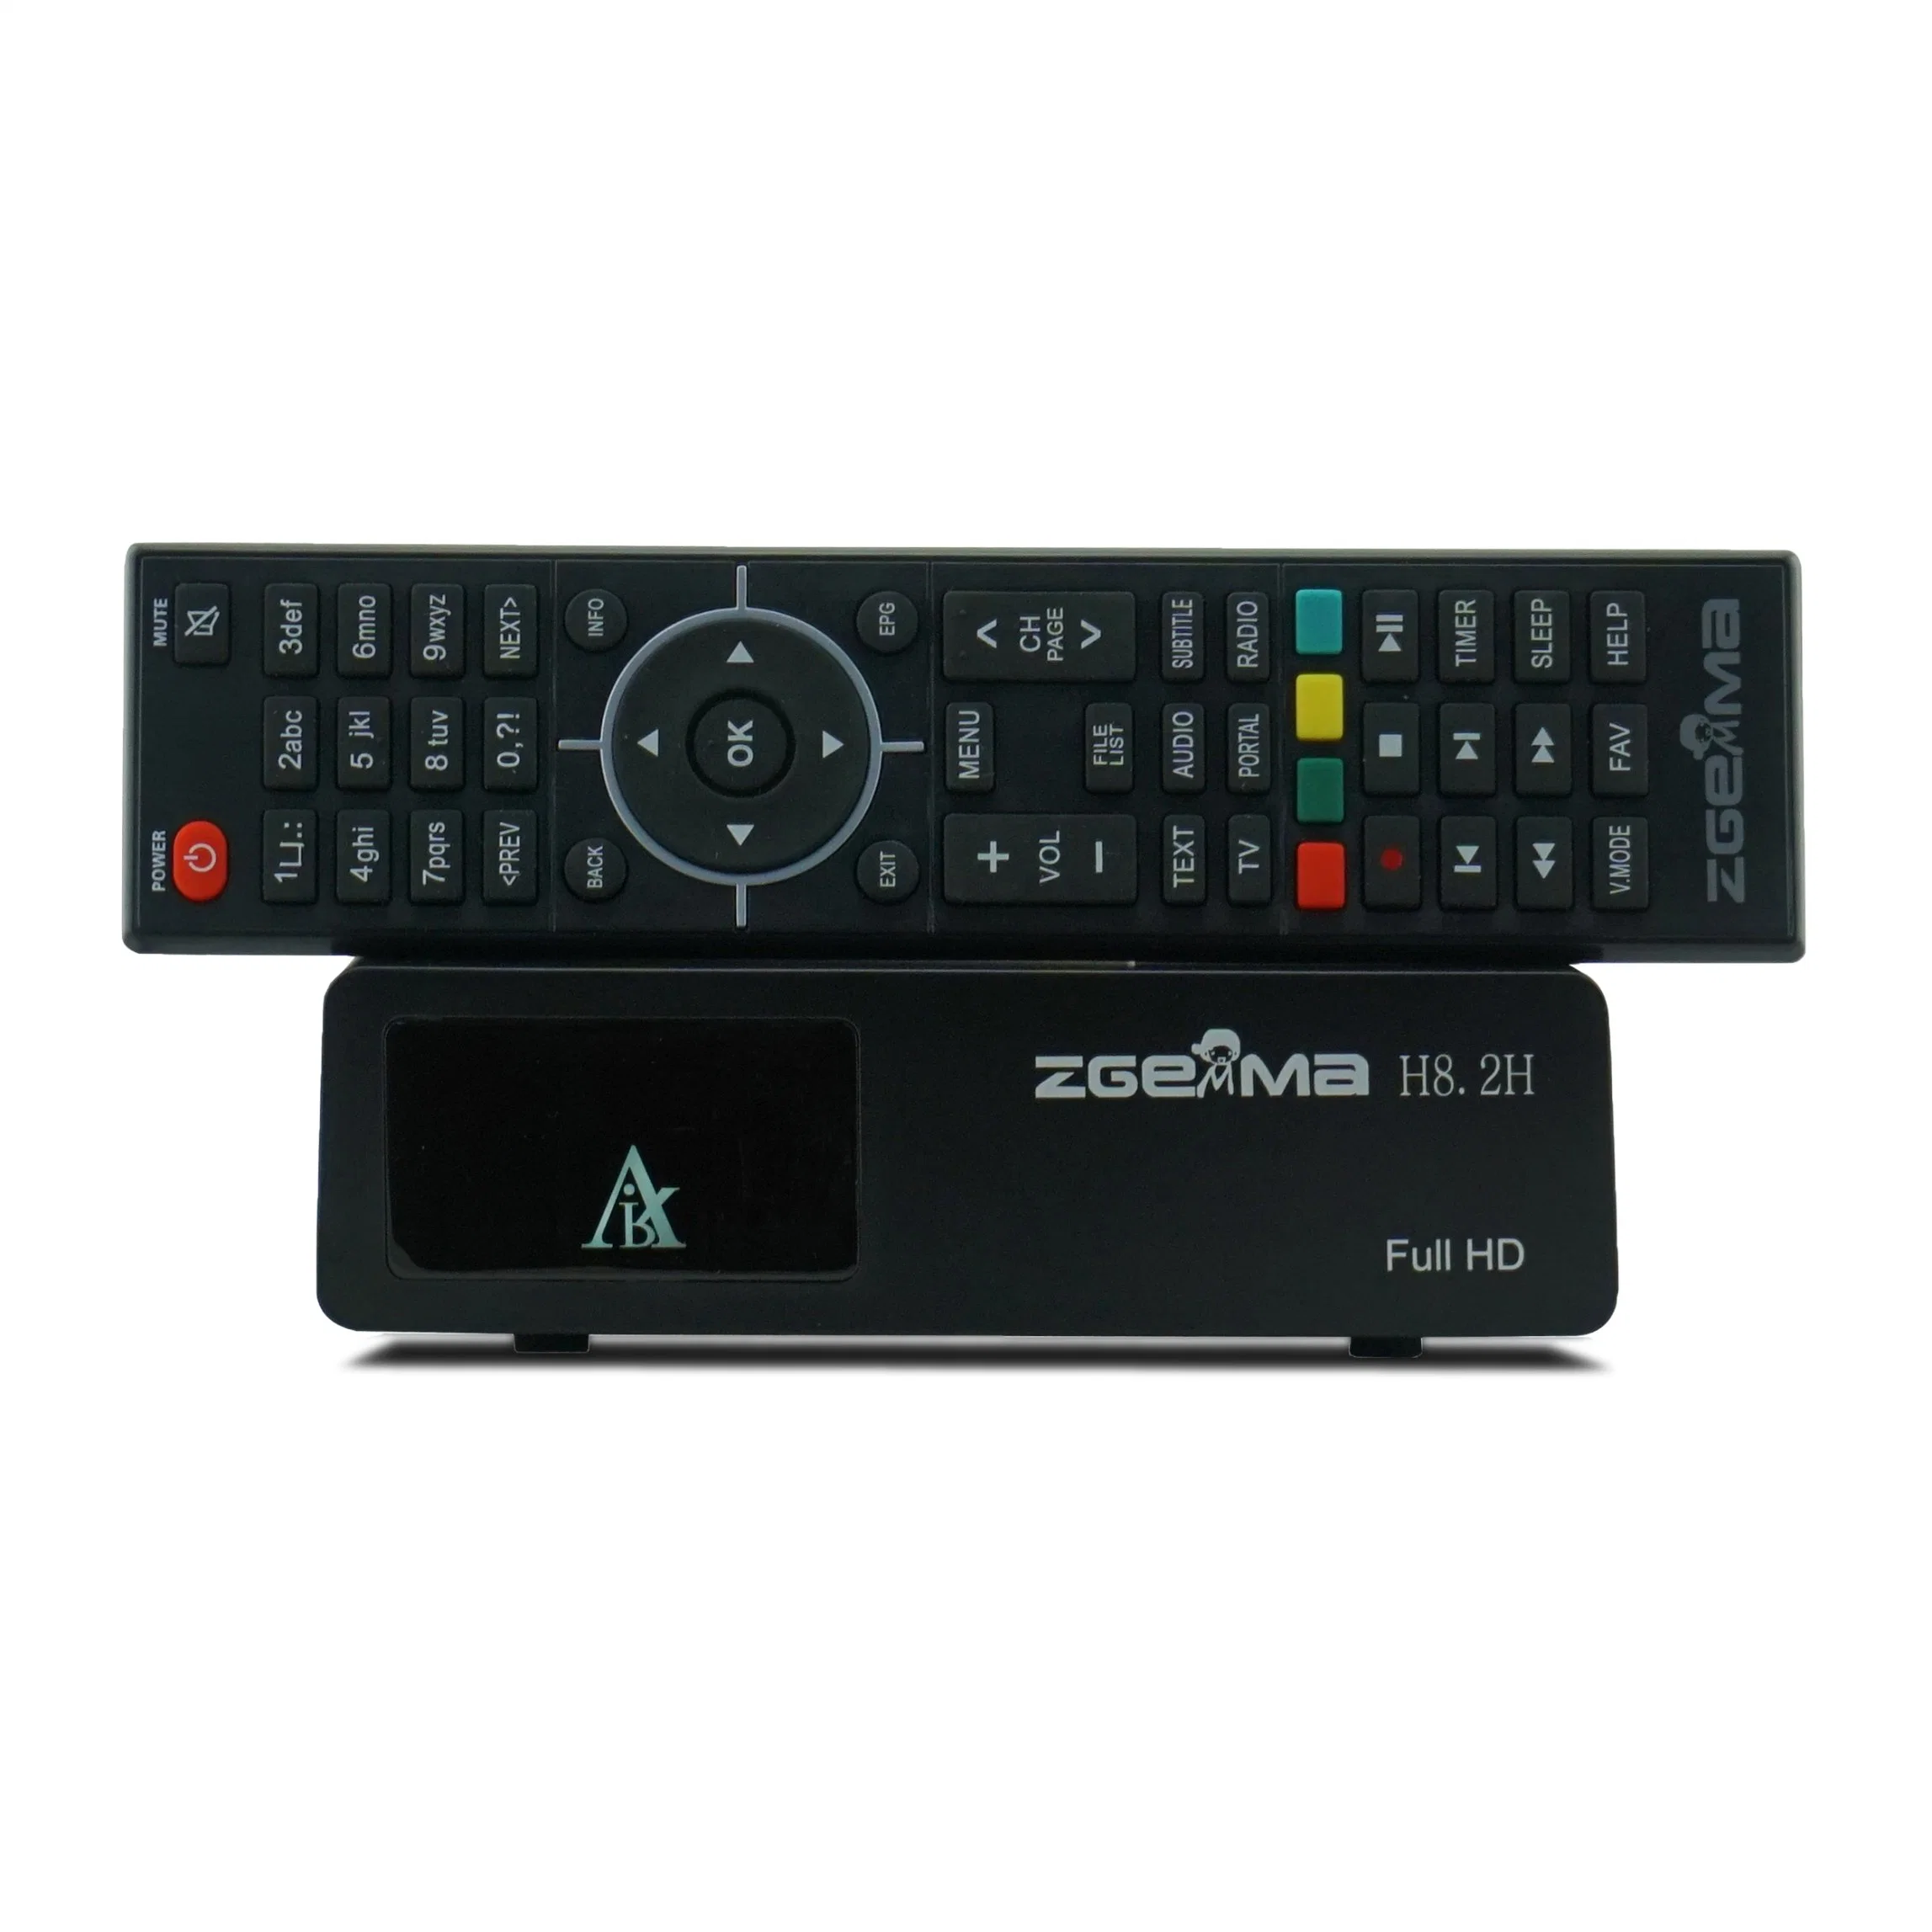 Zgemma H8.2h récepteur de télévision par satellite Linux OS DVB-S2X + DVB-T2/C Tuner combiné intégré